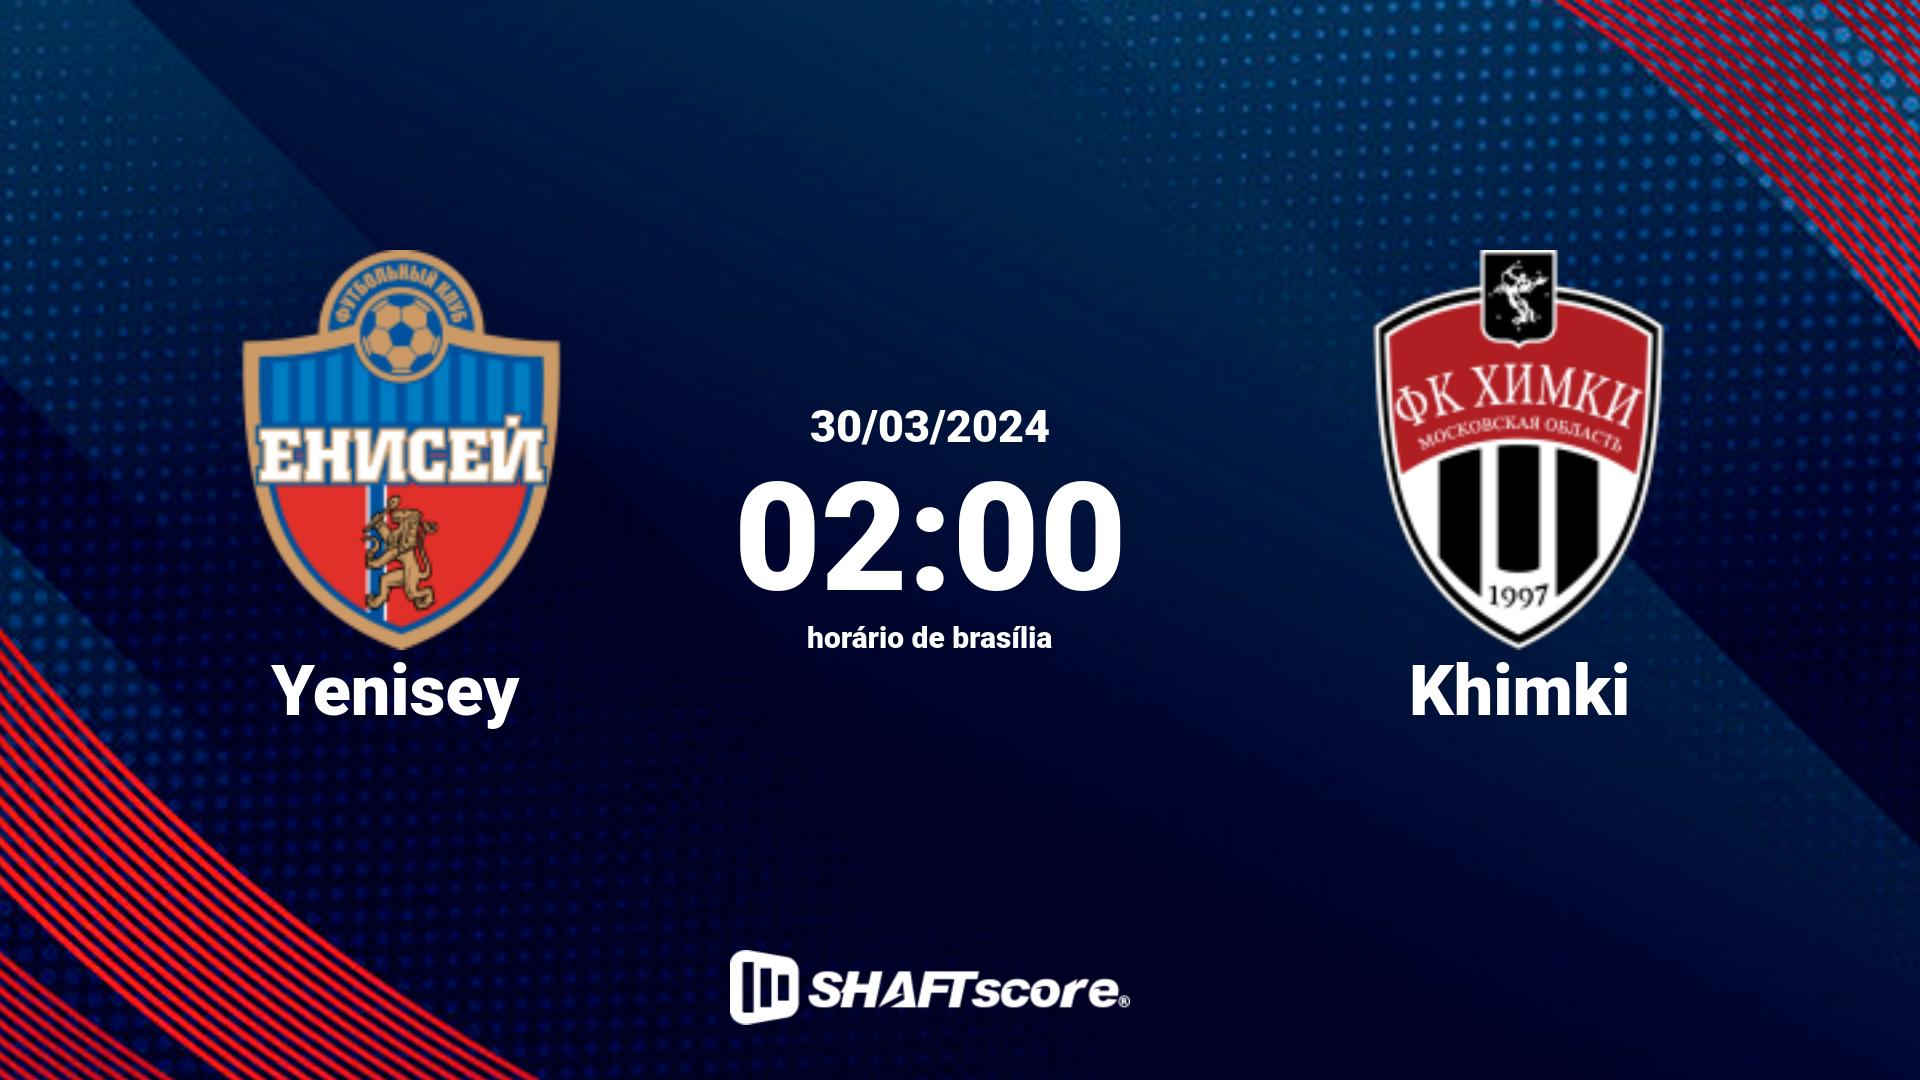 Estatísticas do jogo Yenisey vs Khimki 30.03 02:00